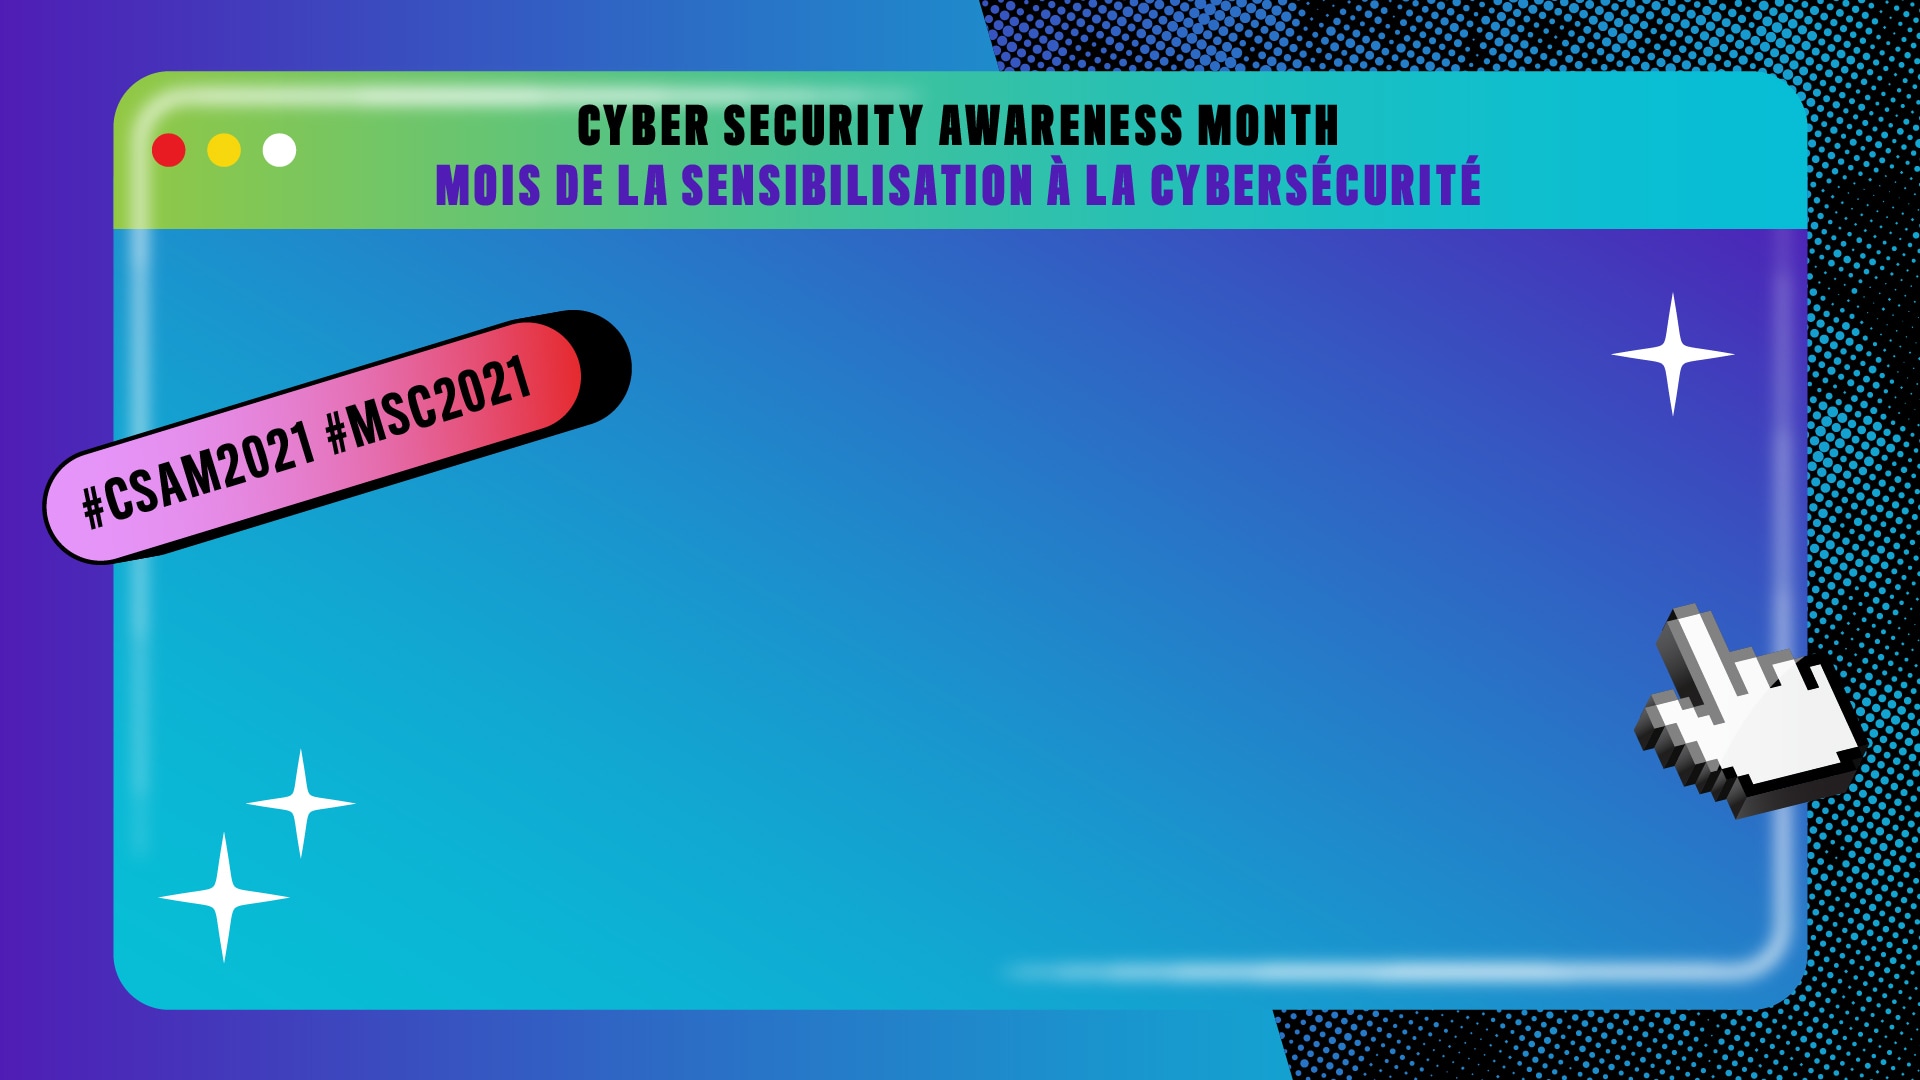 Blue background with Apple-style dialogue box filling most of the background, and cursor hand. Text: Cyber Security Awareness Month, Mois de la sensibilisation à la cybersécurité, #CSAM2021 #MSC2021